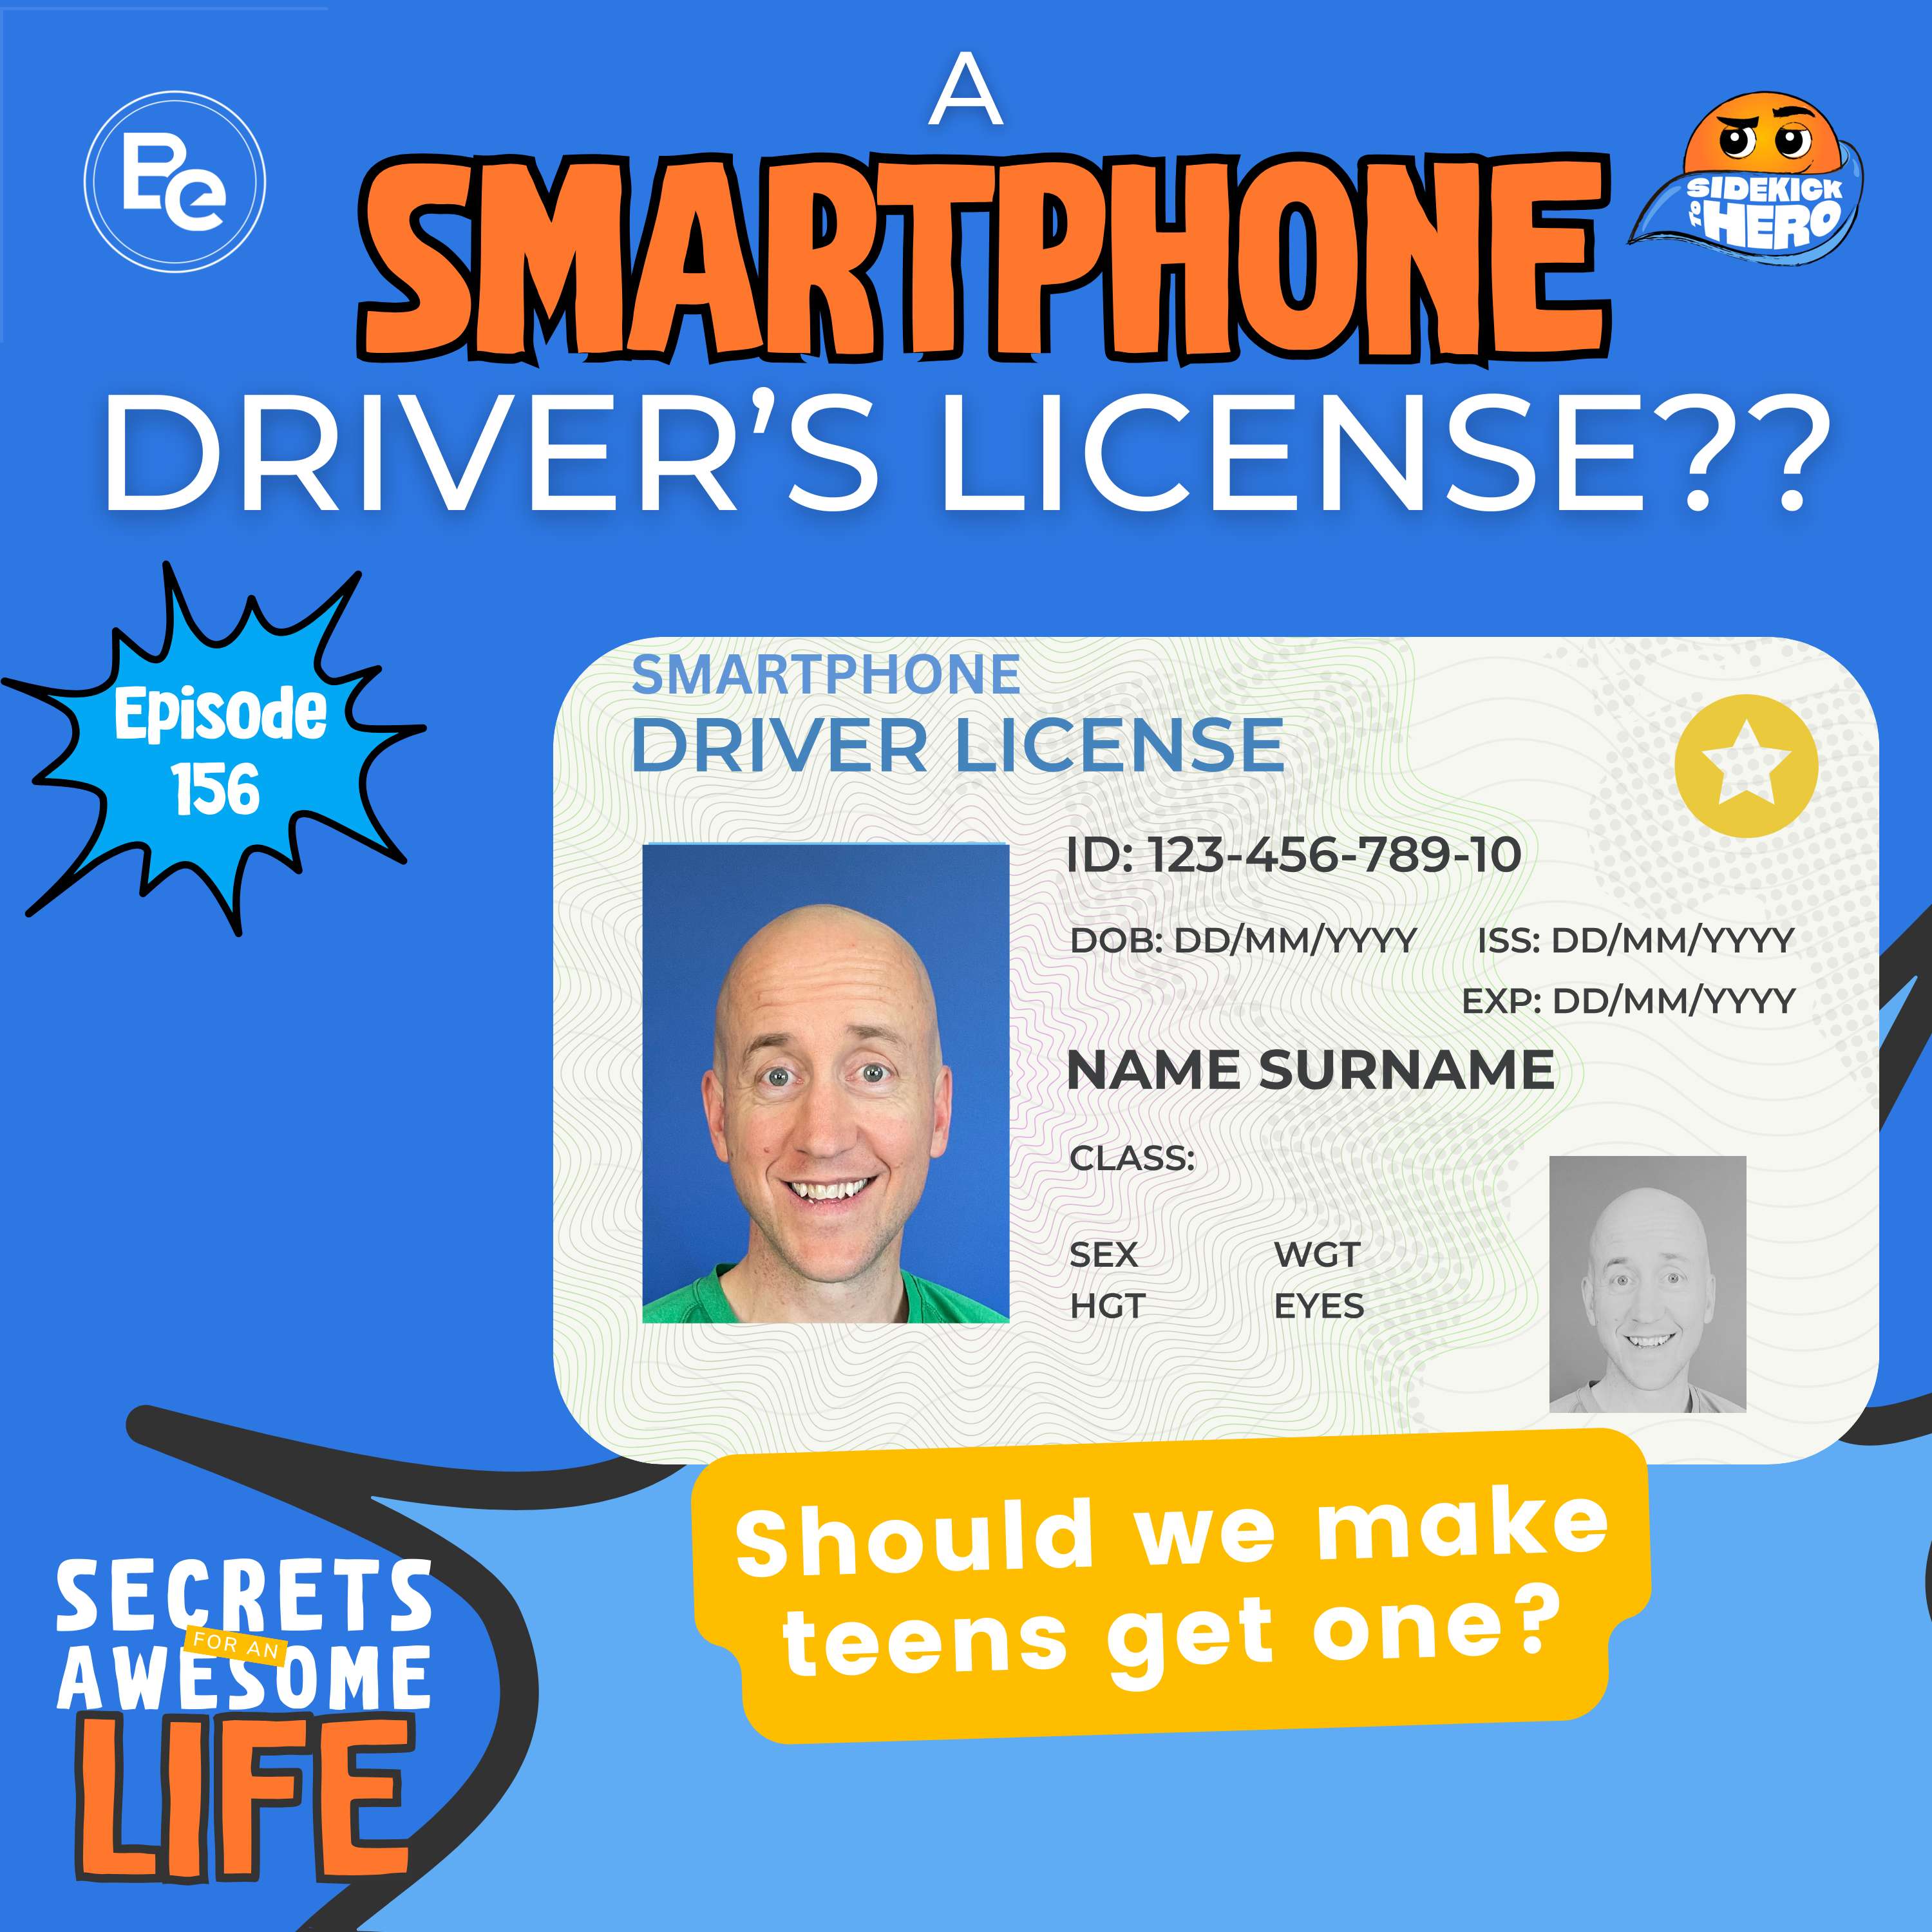 A Smartphone Driver's License??